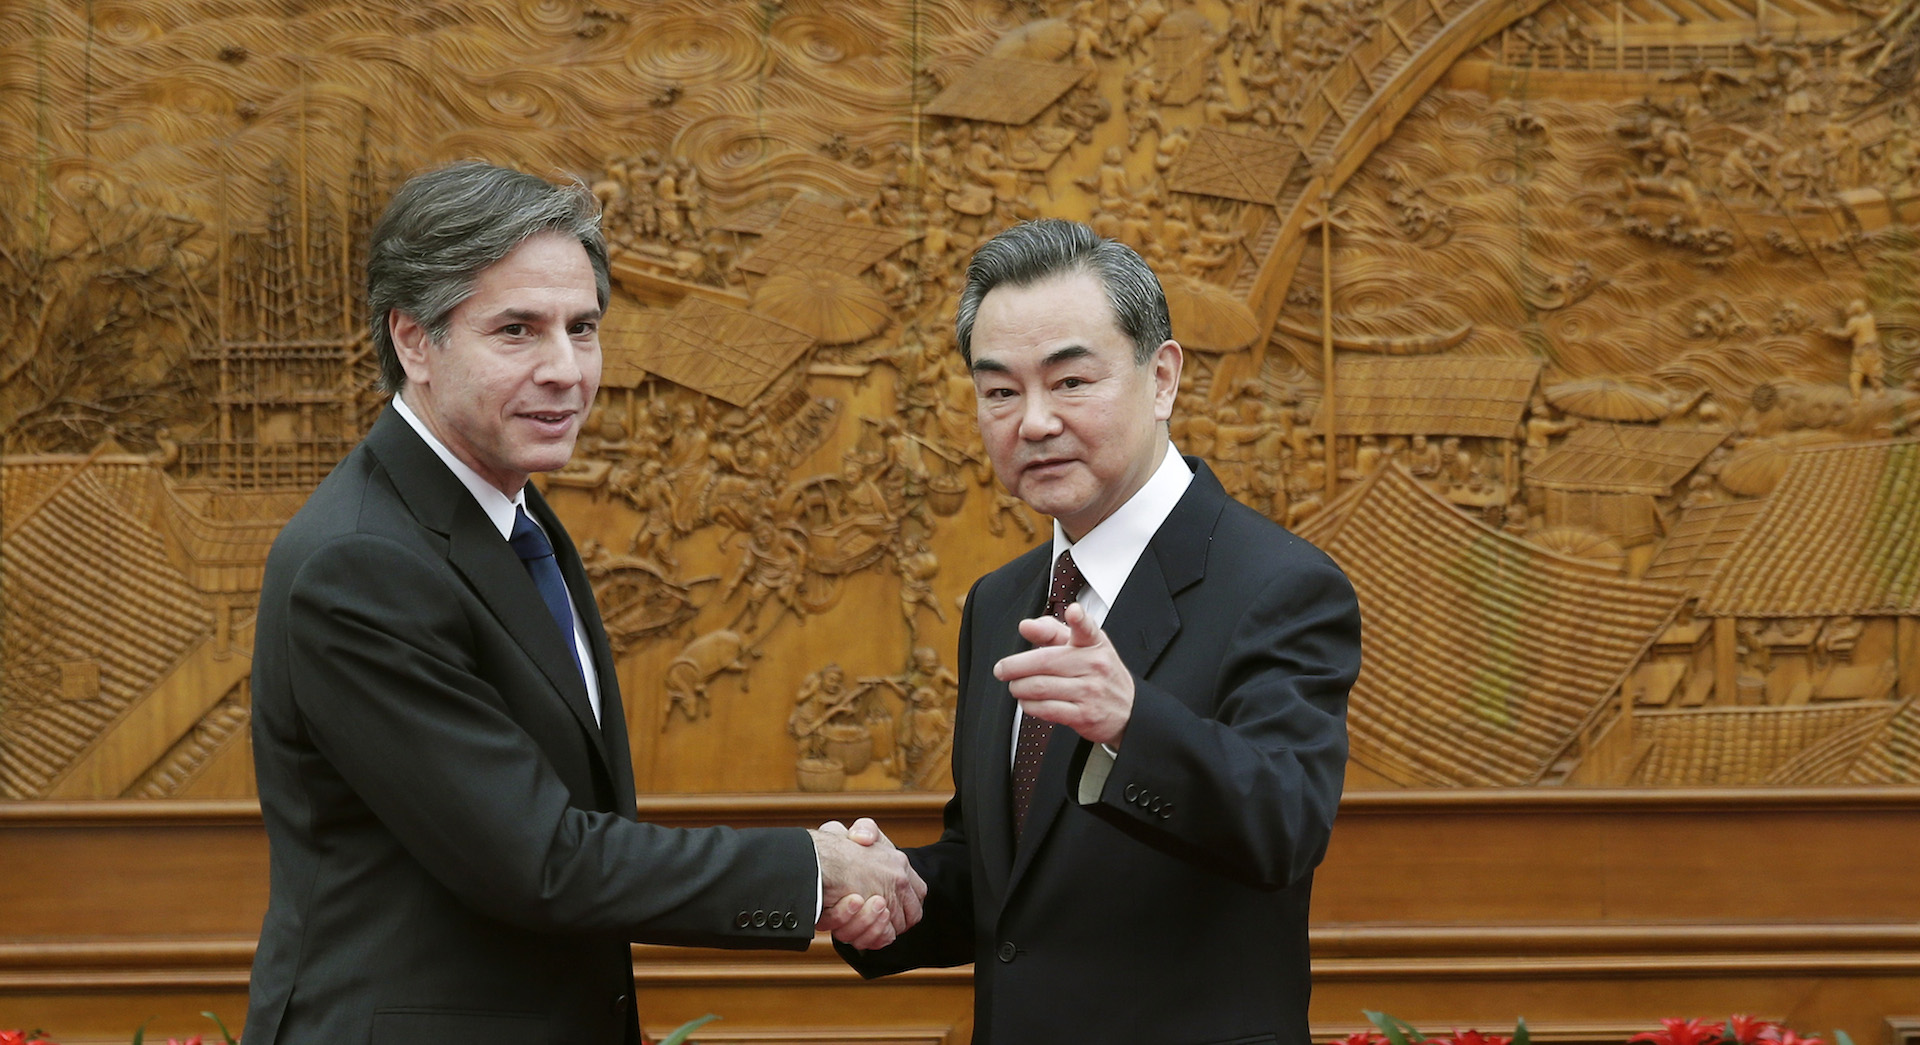 En 2015, le ministre chinois des Affaires étrangères Wang Yi avait reçu à Pékin Anthony Blinken, alors adjoint au secrétaire d'État américain de l'administration Obama. (Source : CGTN)